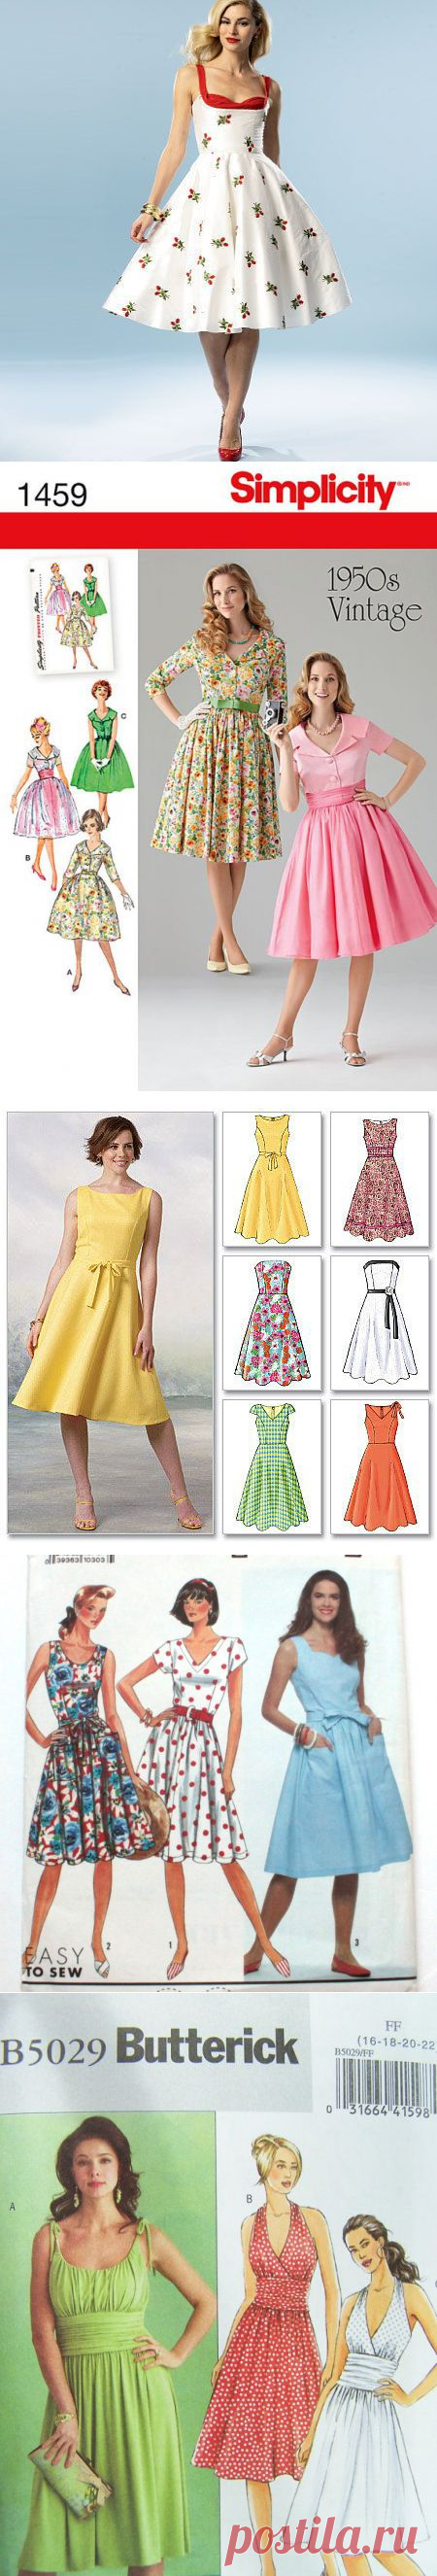 Стильные ретро платья 50-60-х снова в моде | Своими руками